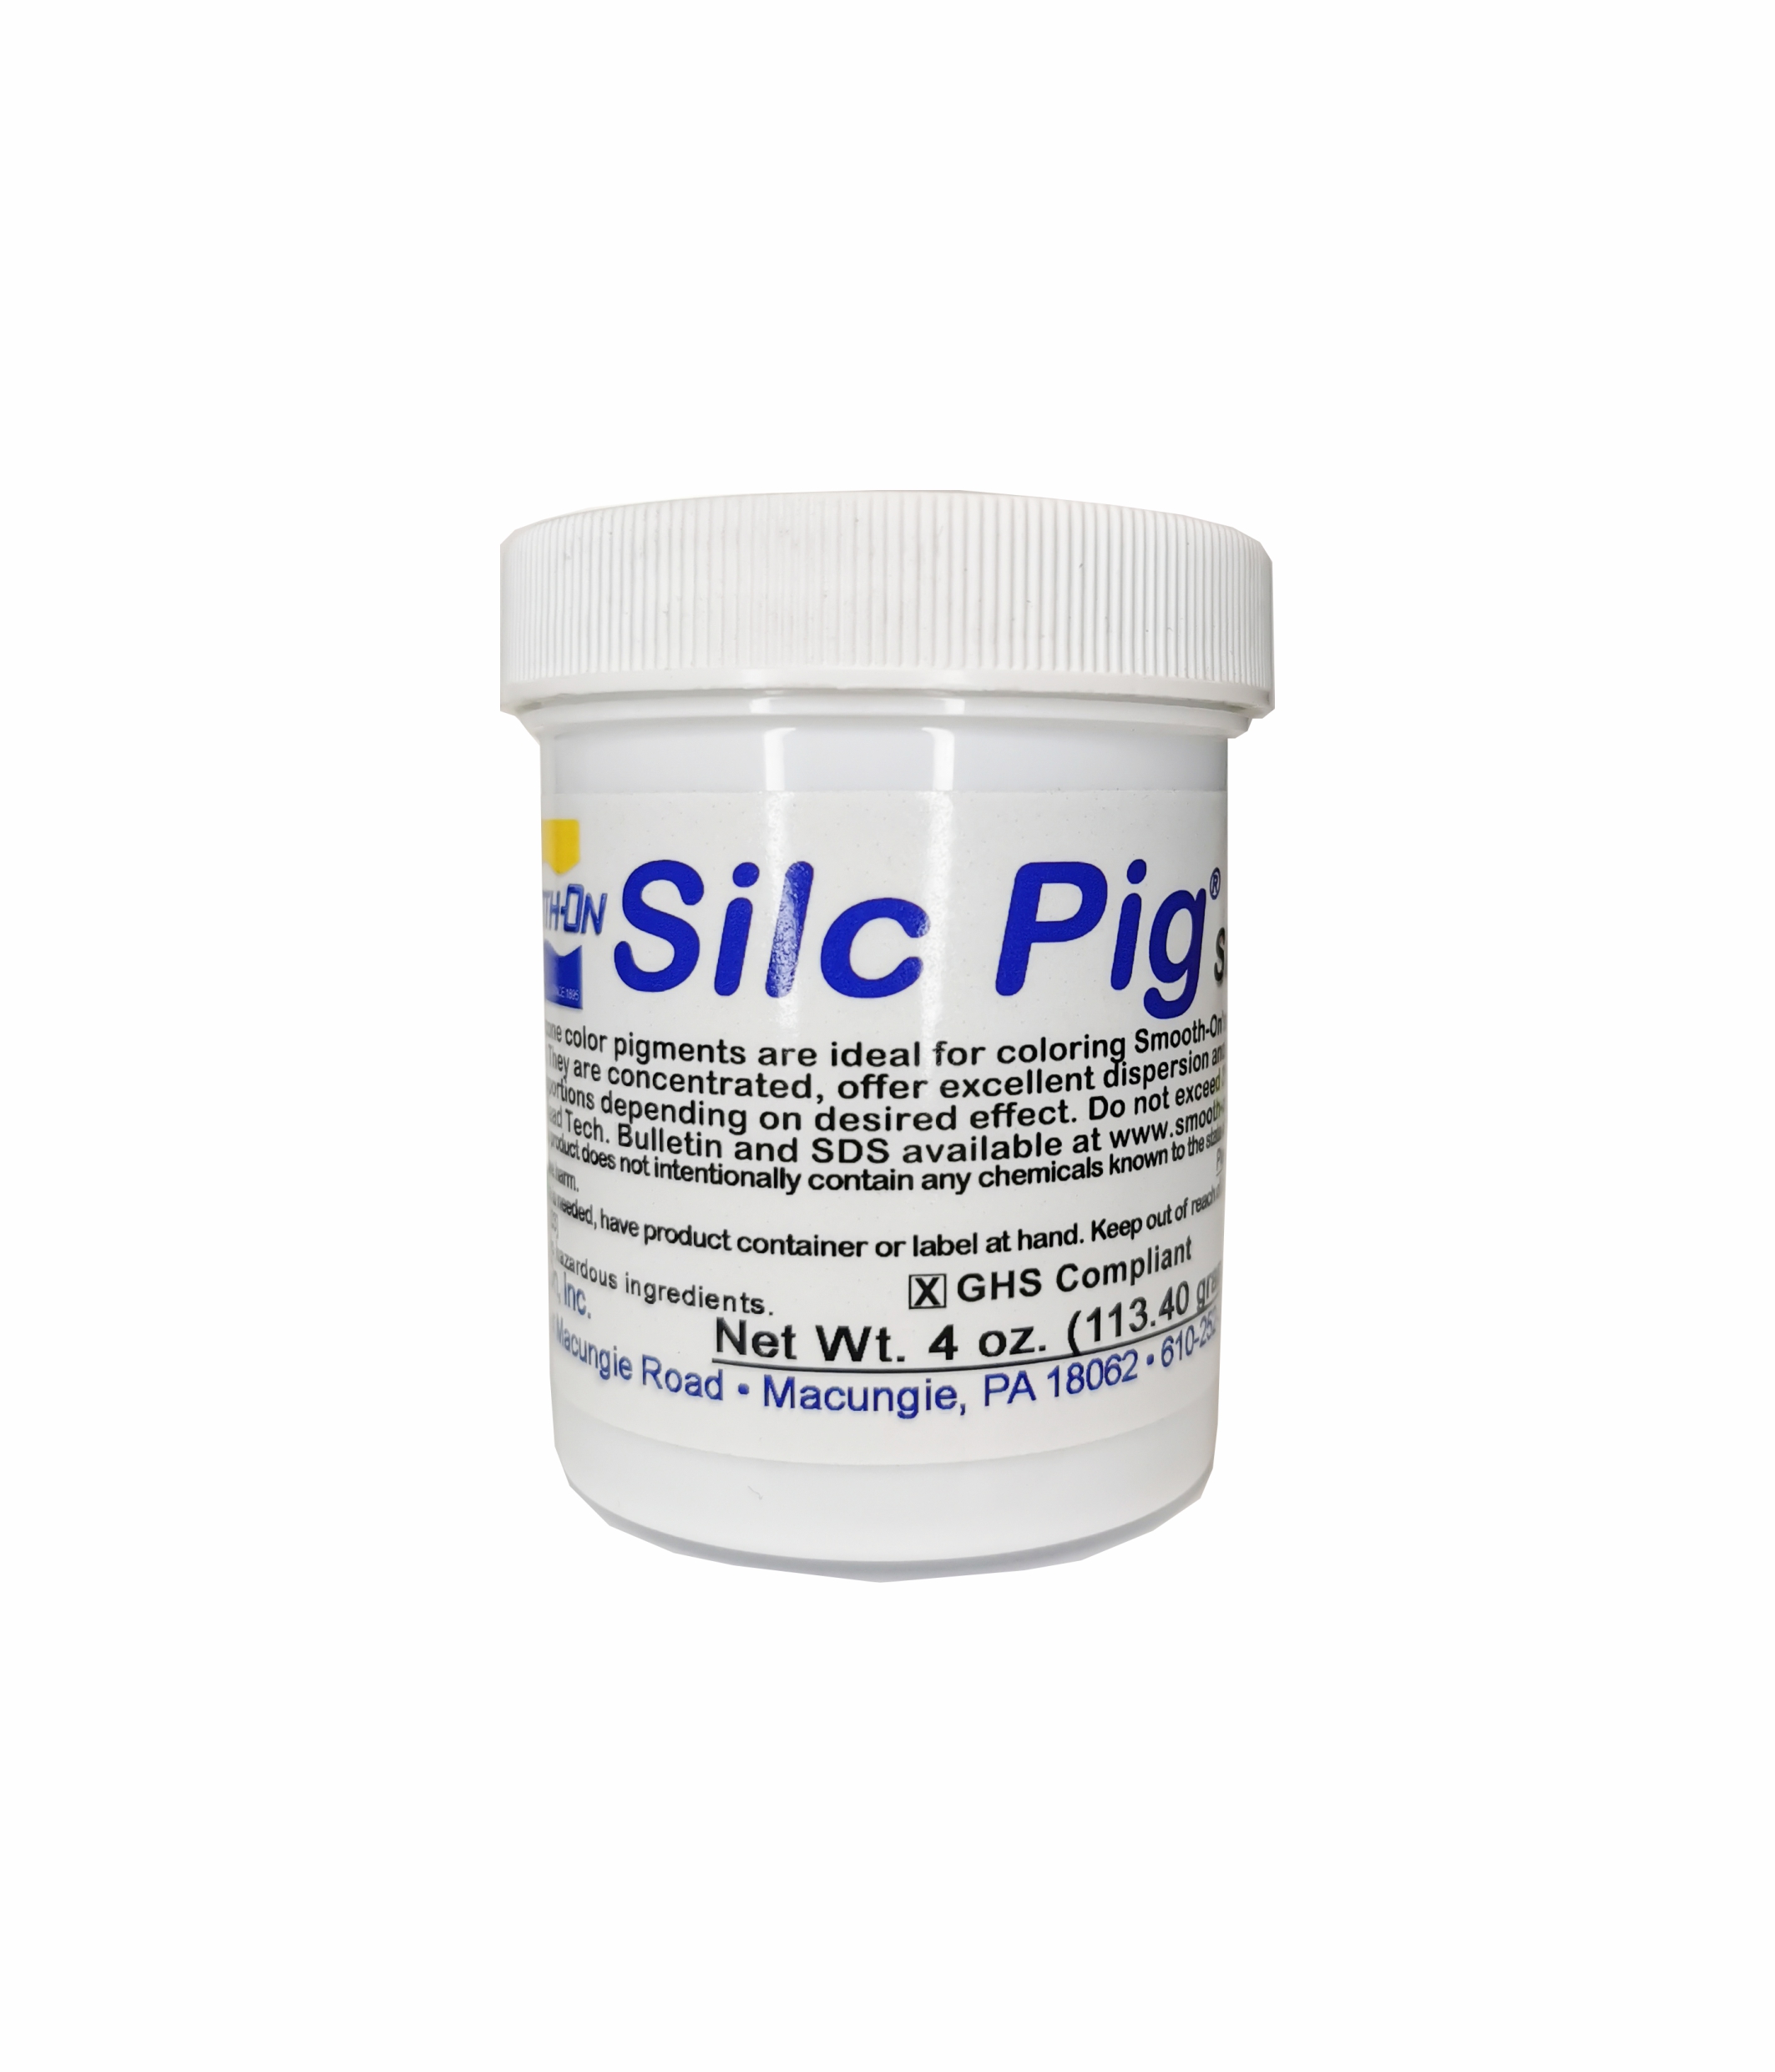 Черный пигмент для силикона Silc Pig